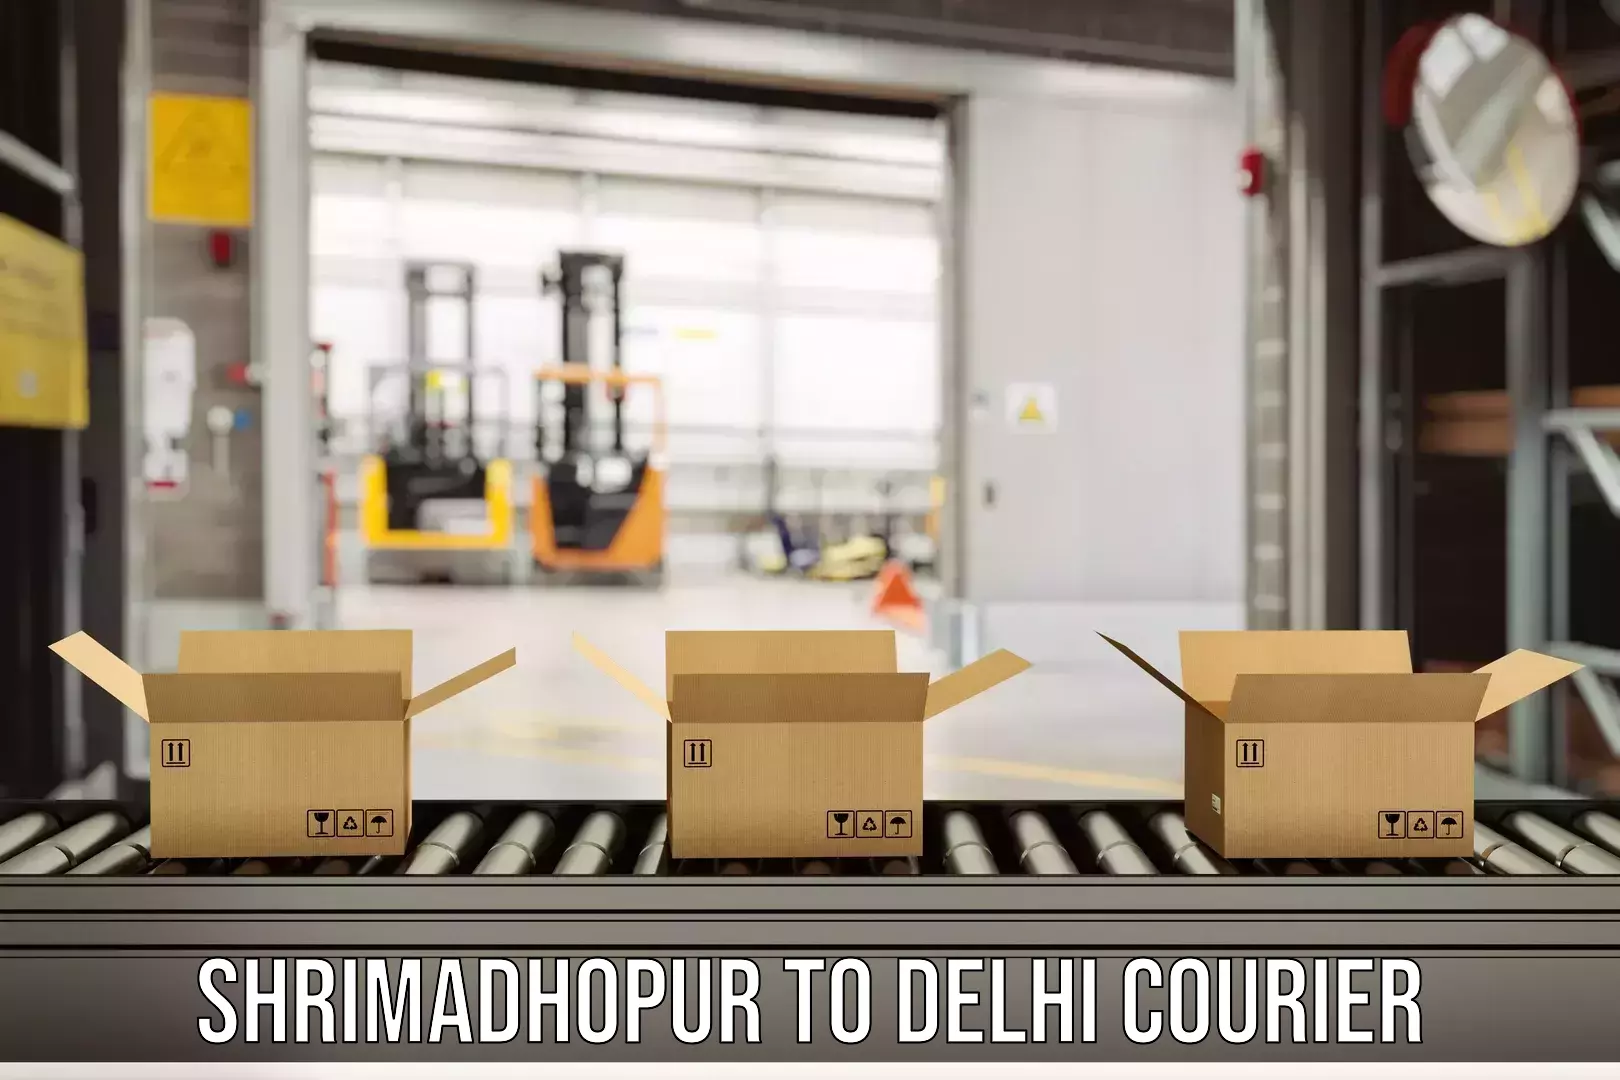 Door-to-door freight service Shrimadhopur to Ashok Vihar